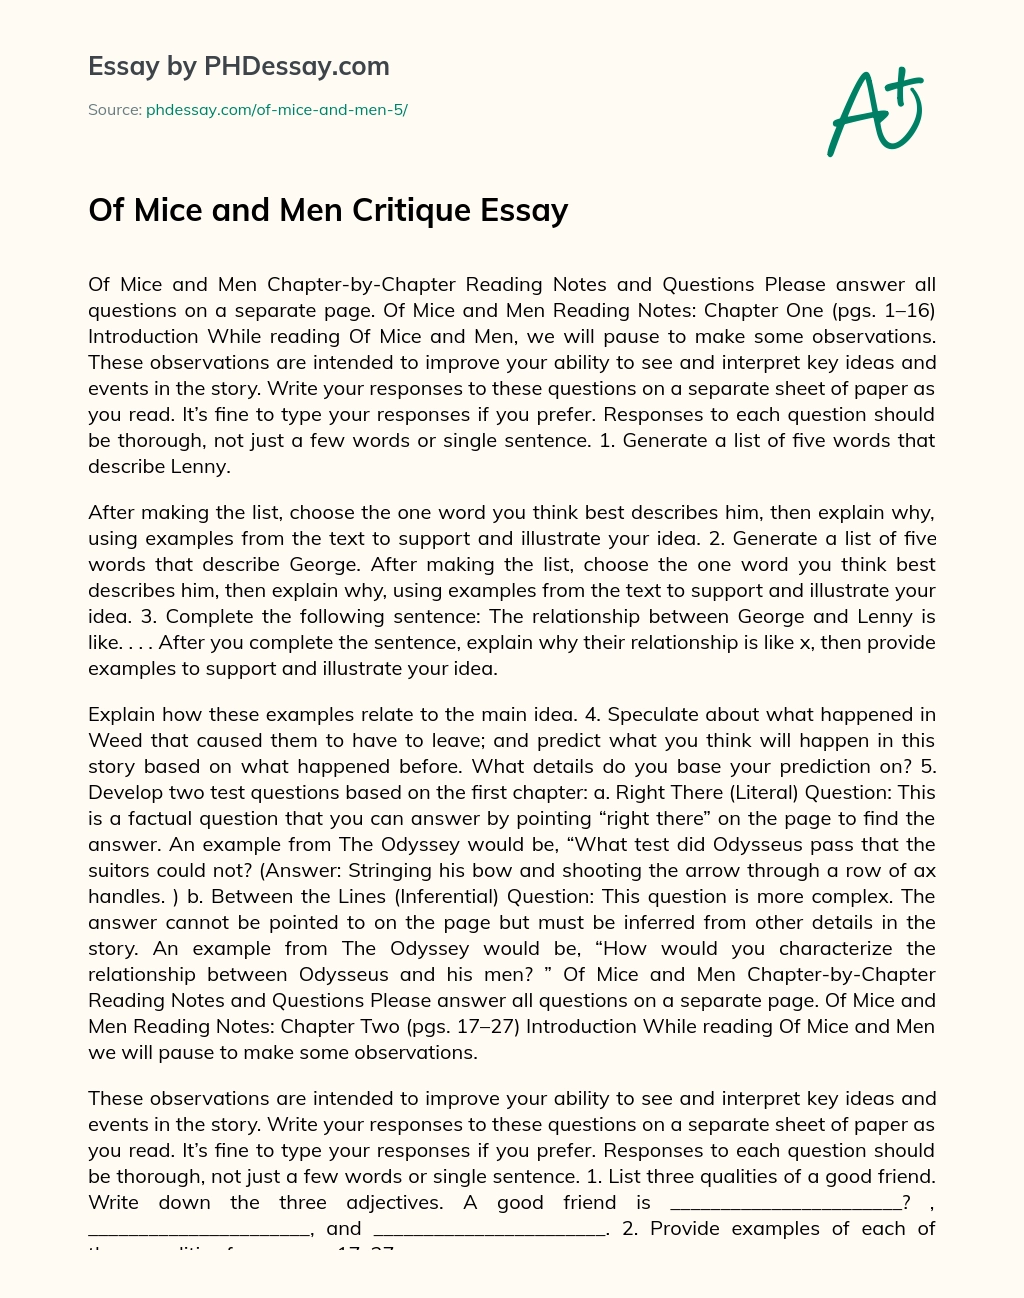 Of Mice and Men Critique Essay essay